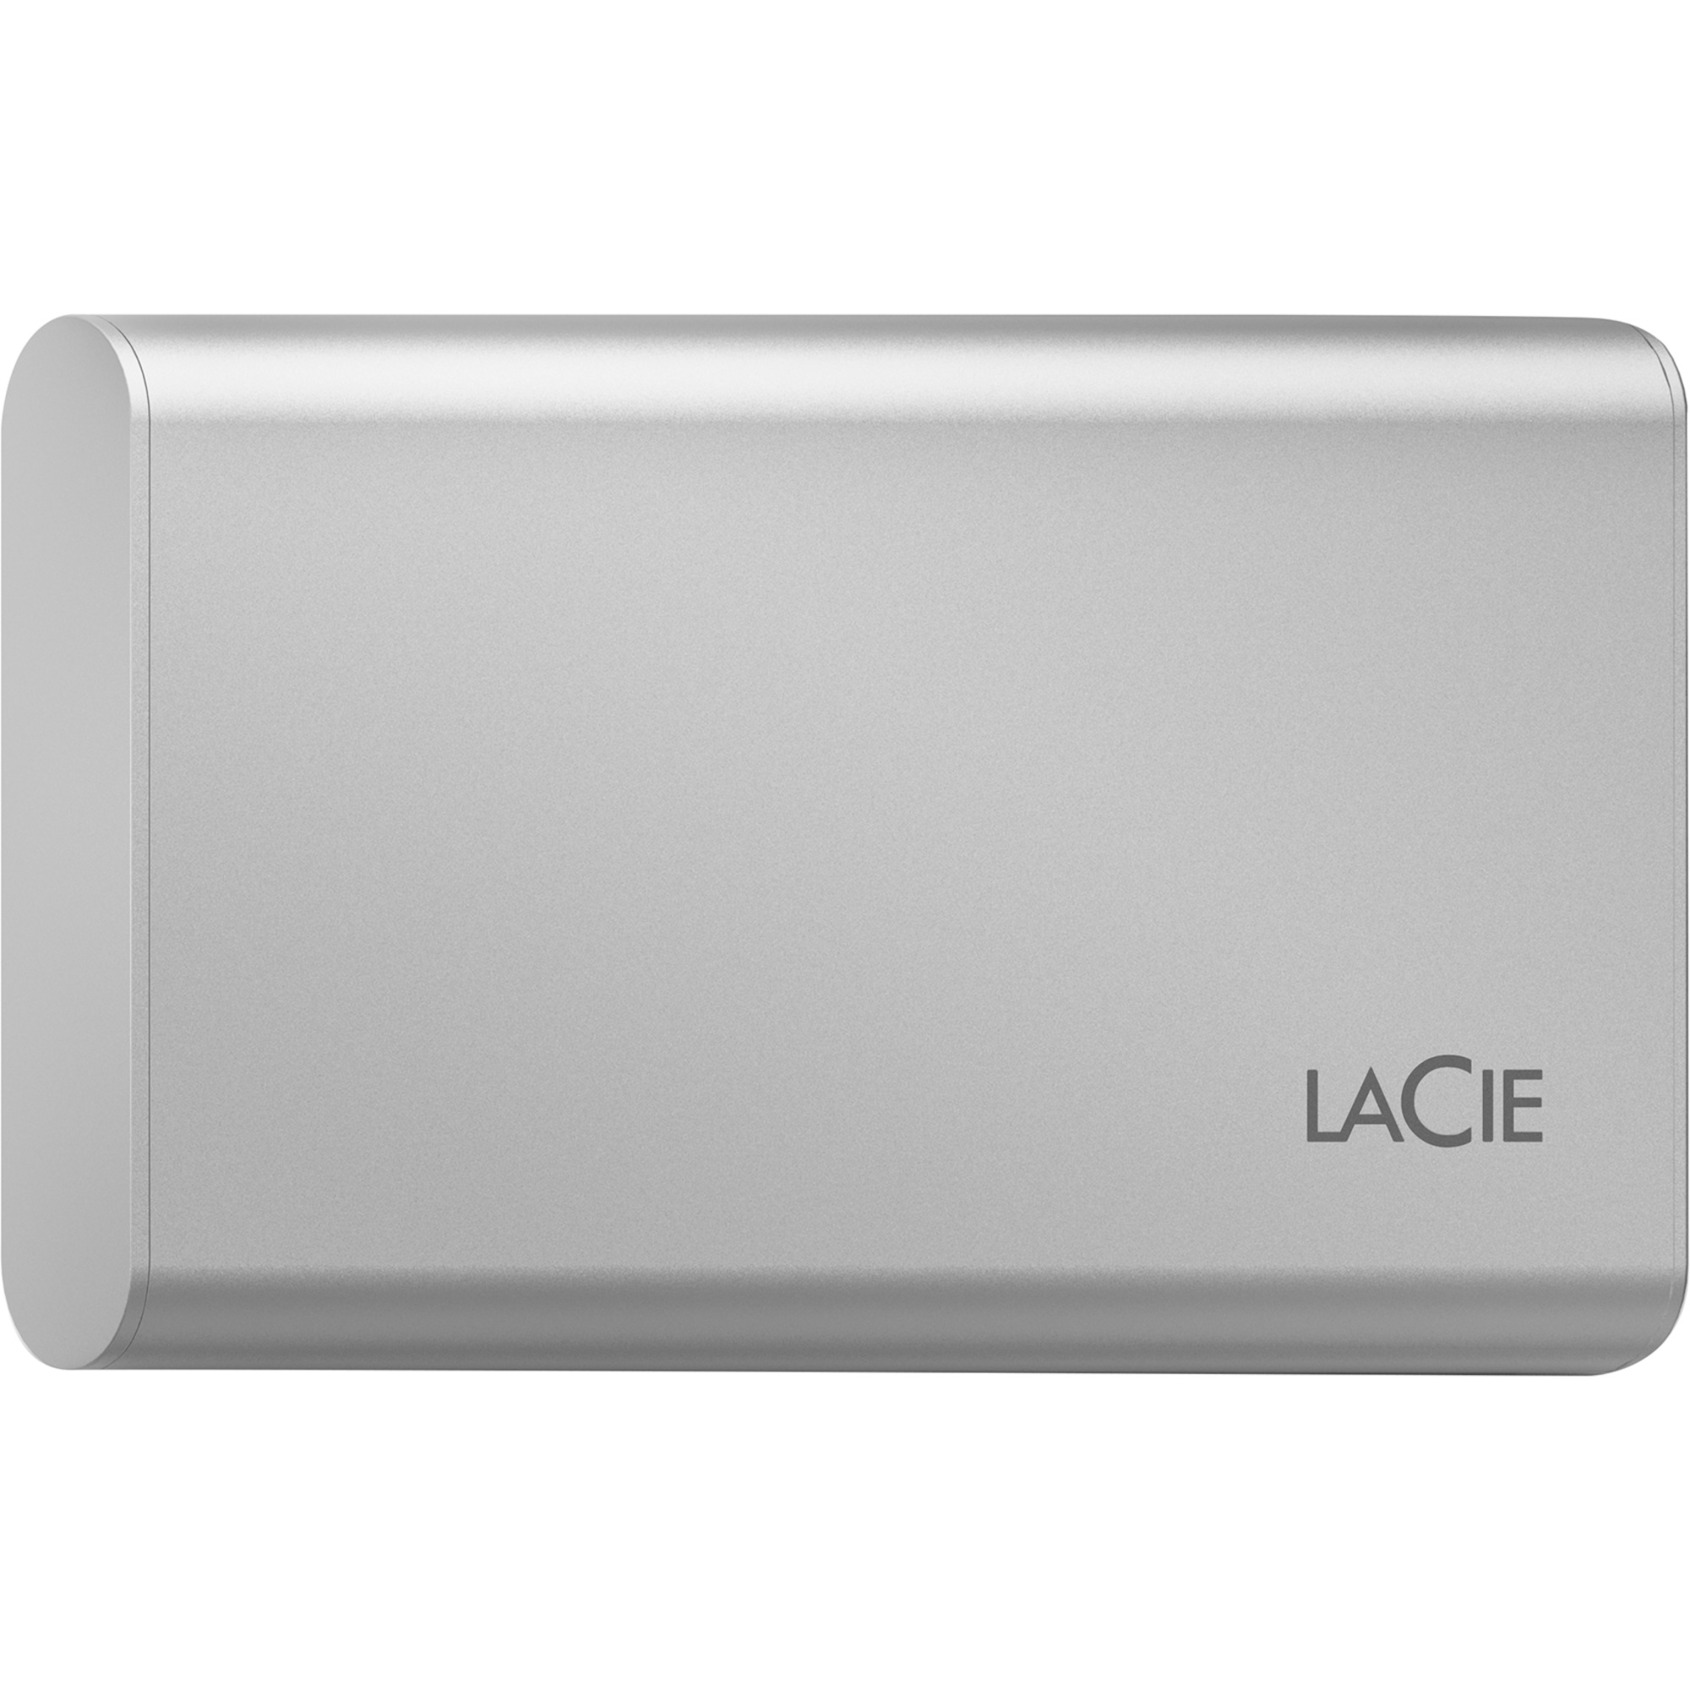 Portable SSD 1 TB von Lacie